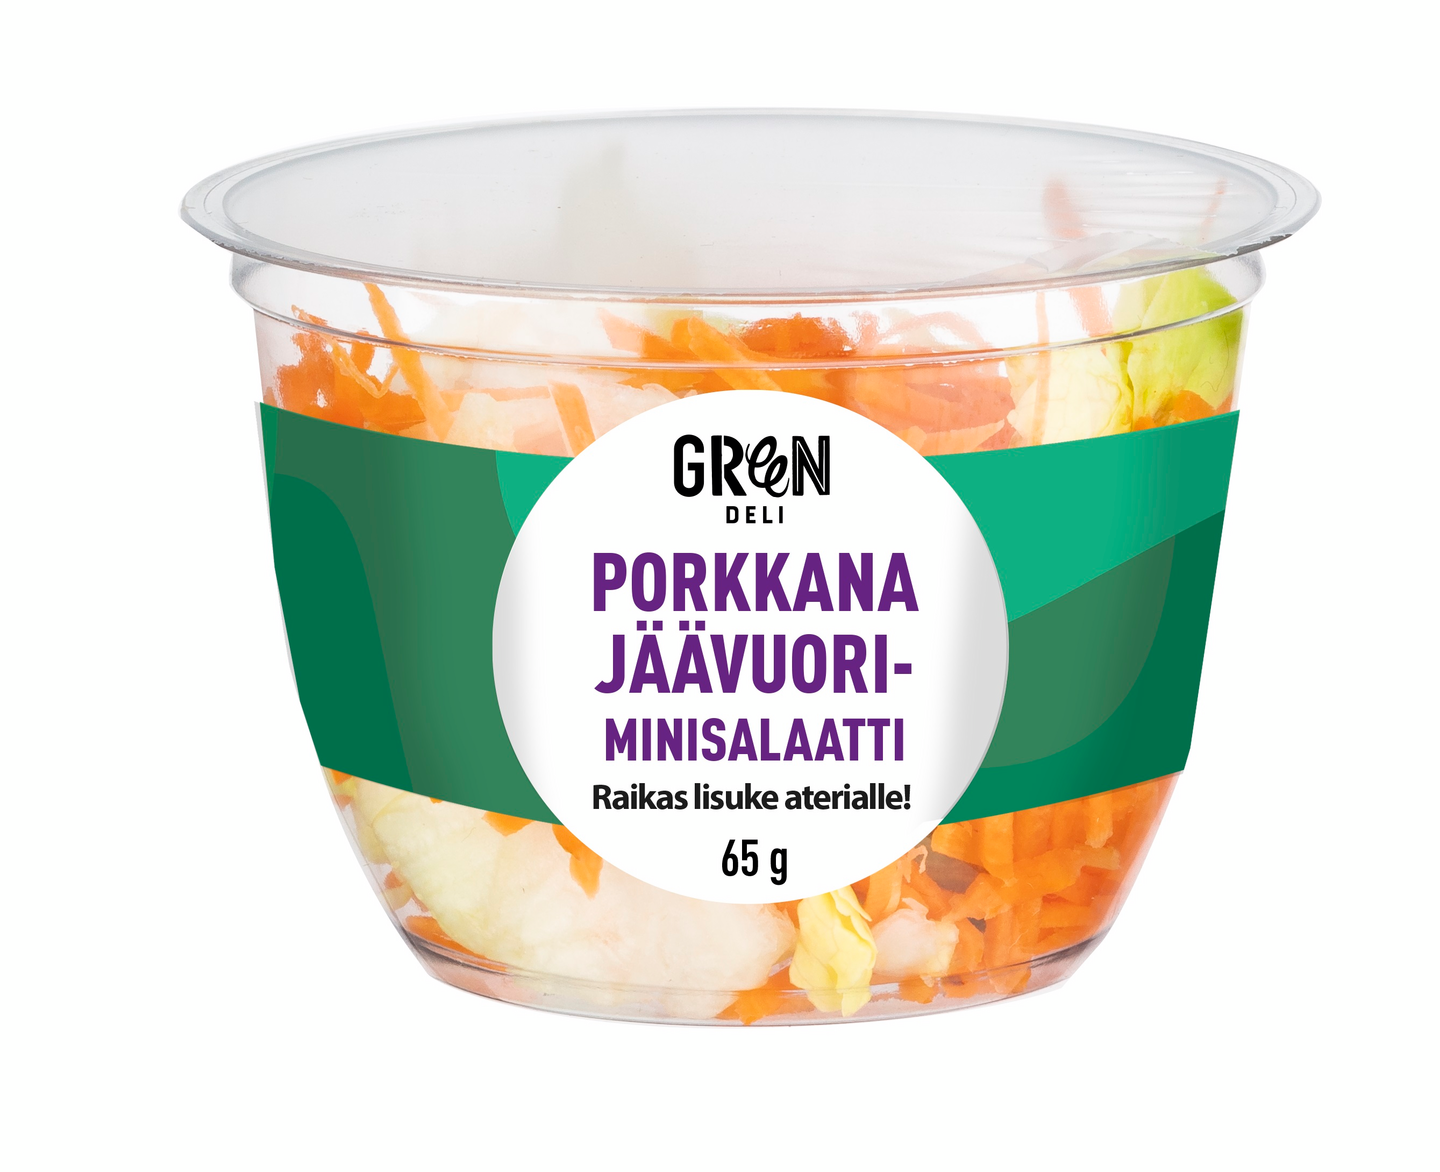 Greendeli jäävuori-porkkana minisalaatti 65g